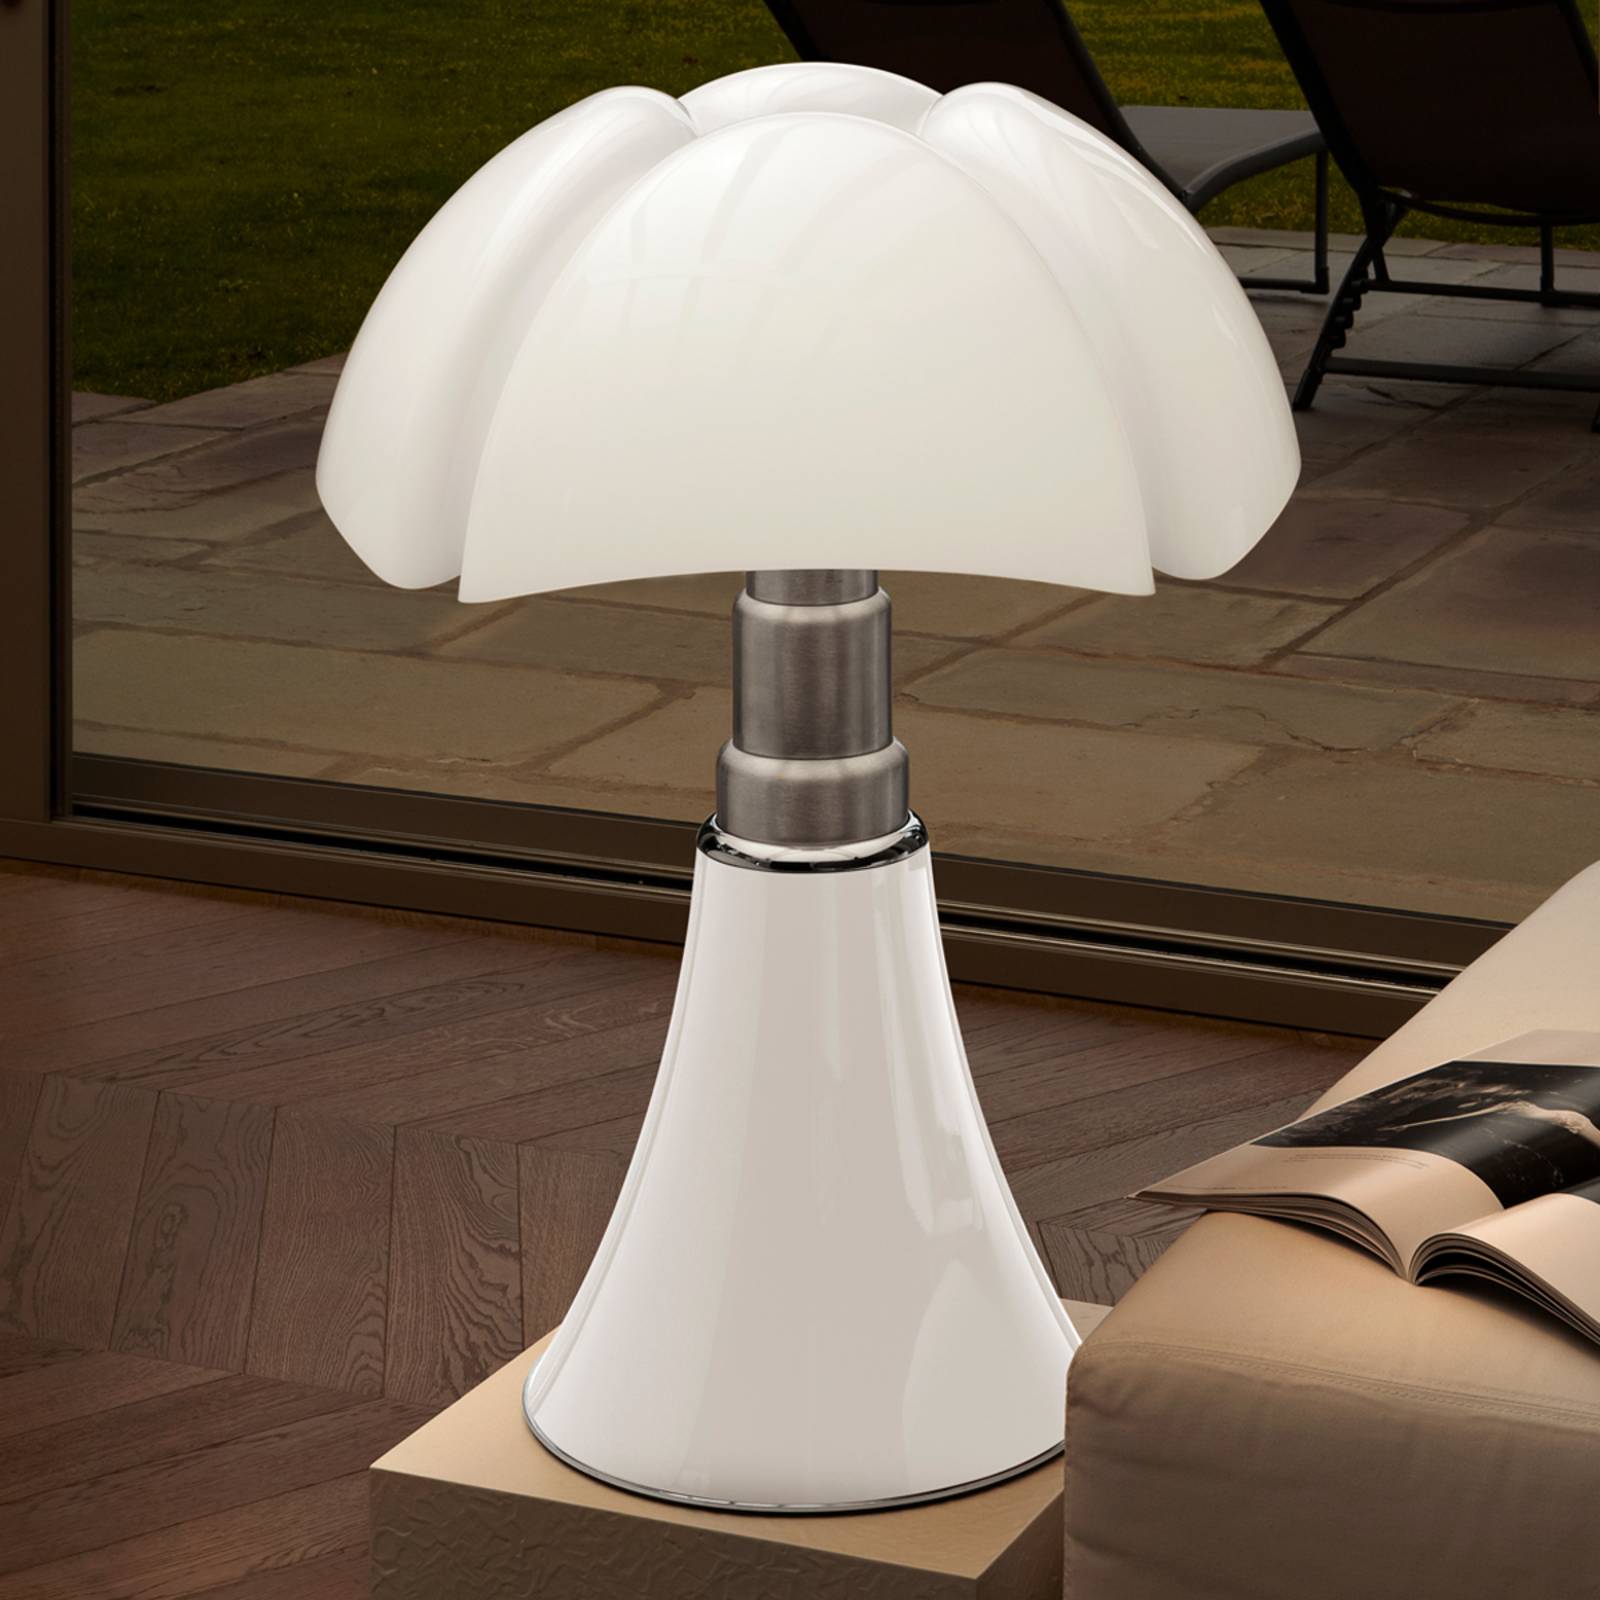 Image of Lampe à poser à hauteur réglable PIPISTRELLO blanc 8033383018500